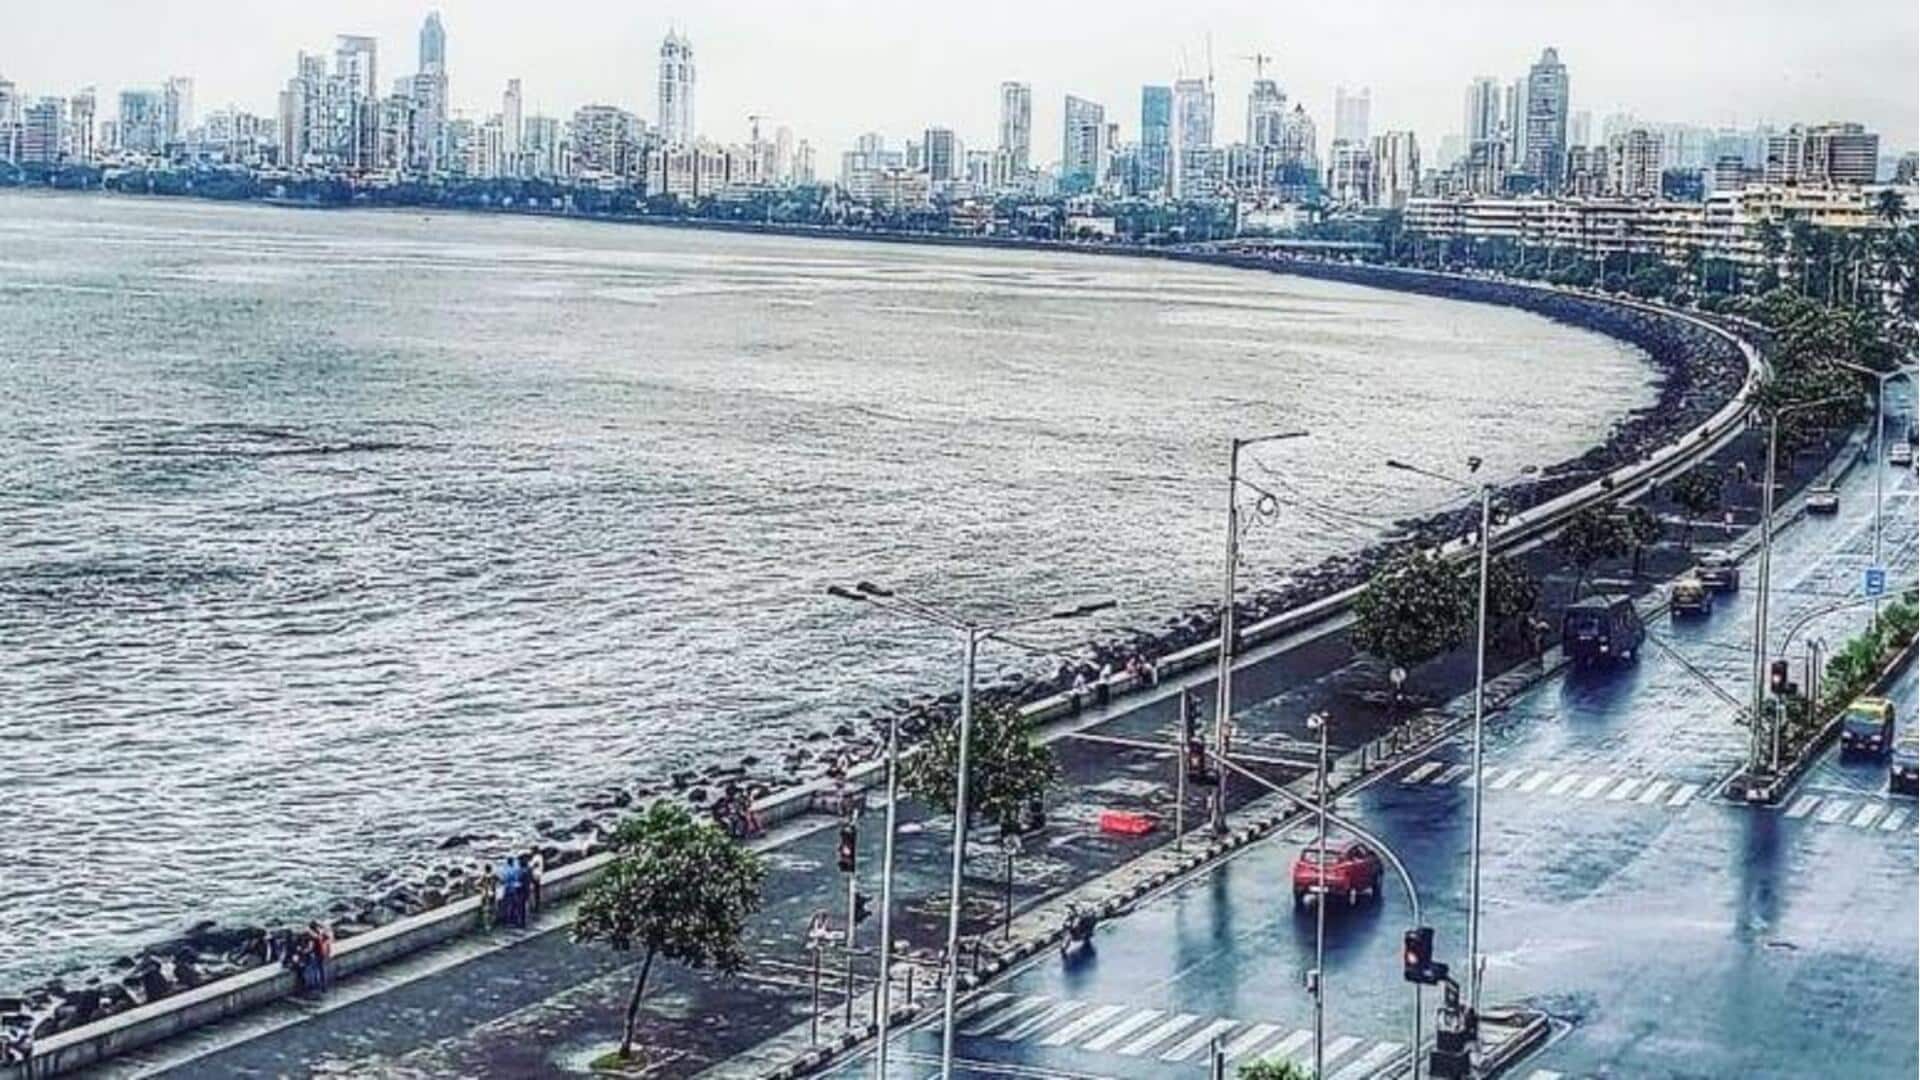 Benamkan diri dalam keajaiban musim hujan di Mumbai dengan panduan ini